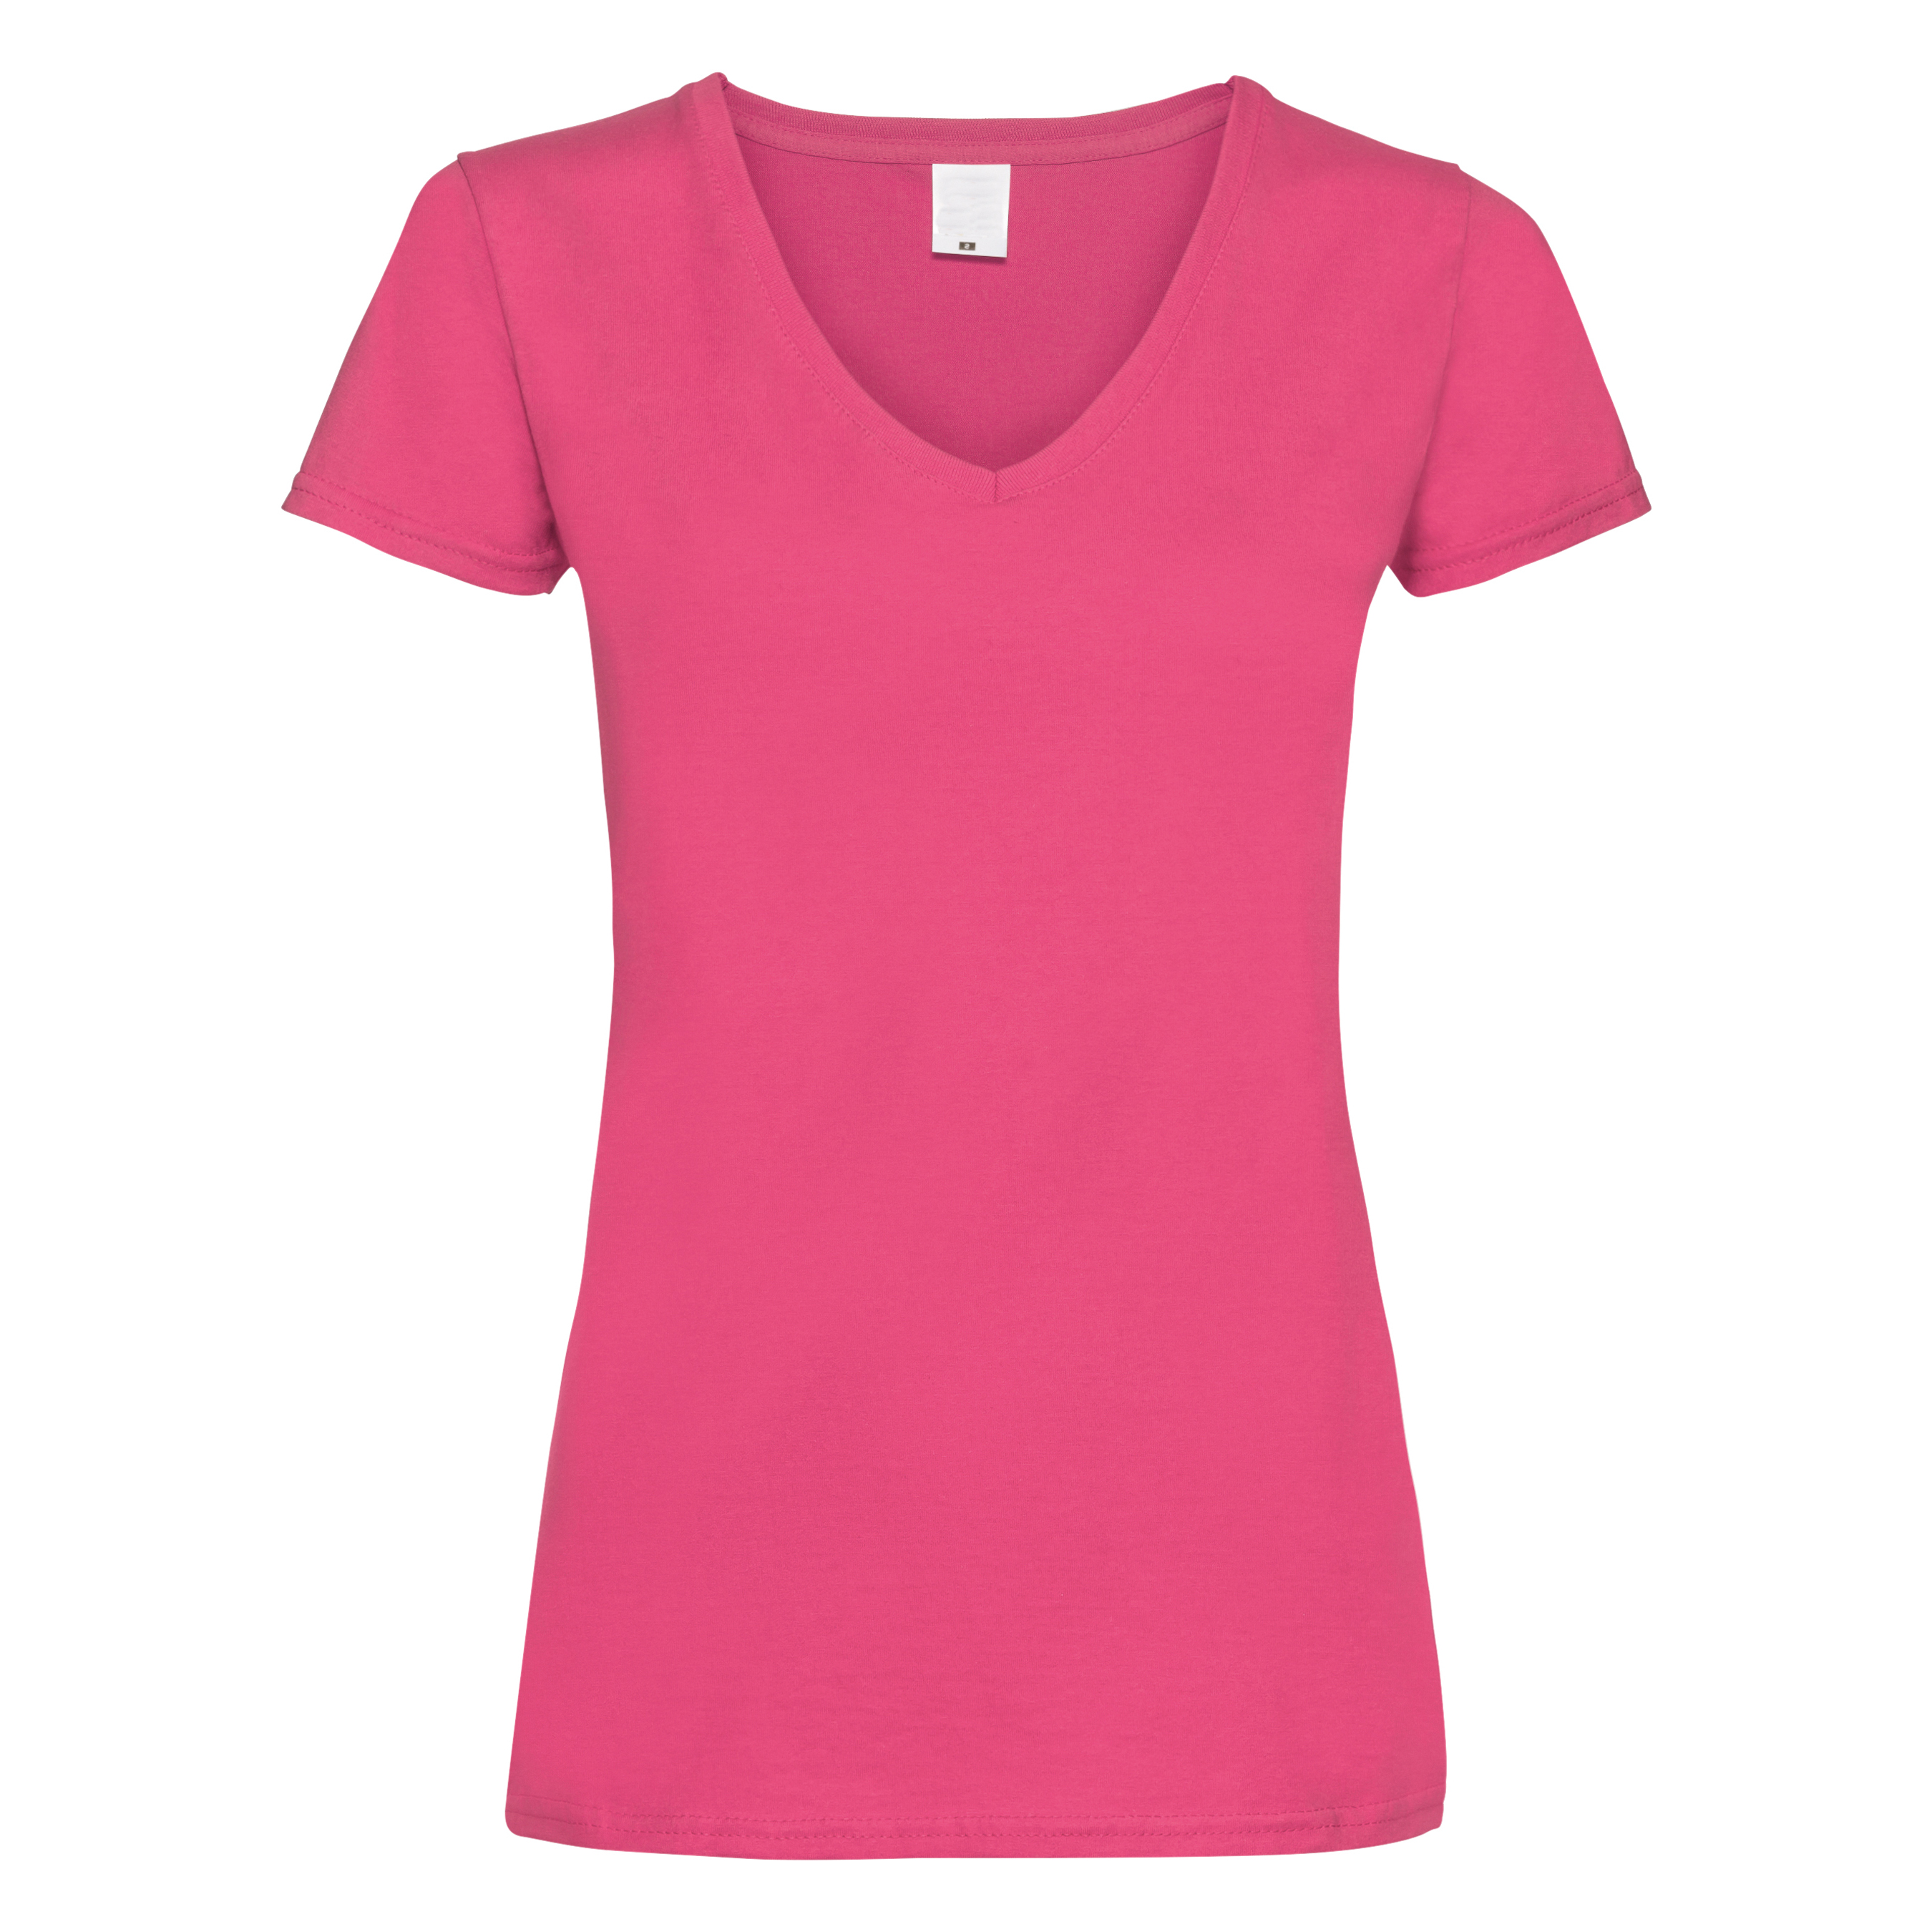 Camiseta Entallada De Manga Corta Y Cuello En V Universal Textiles - rosa - 